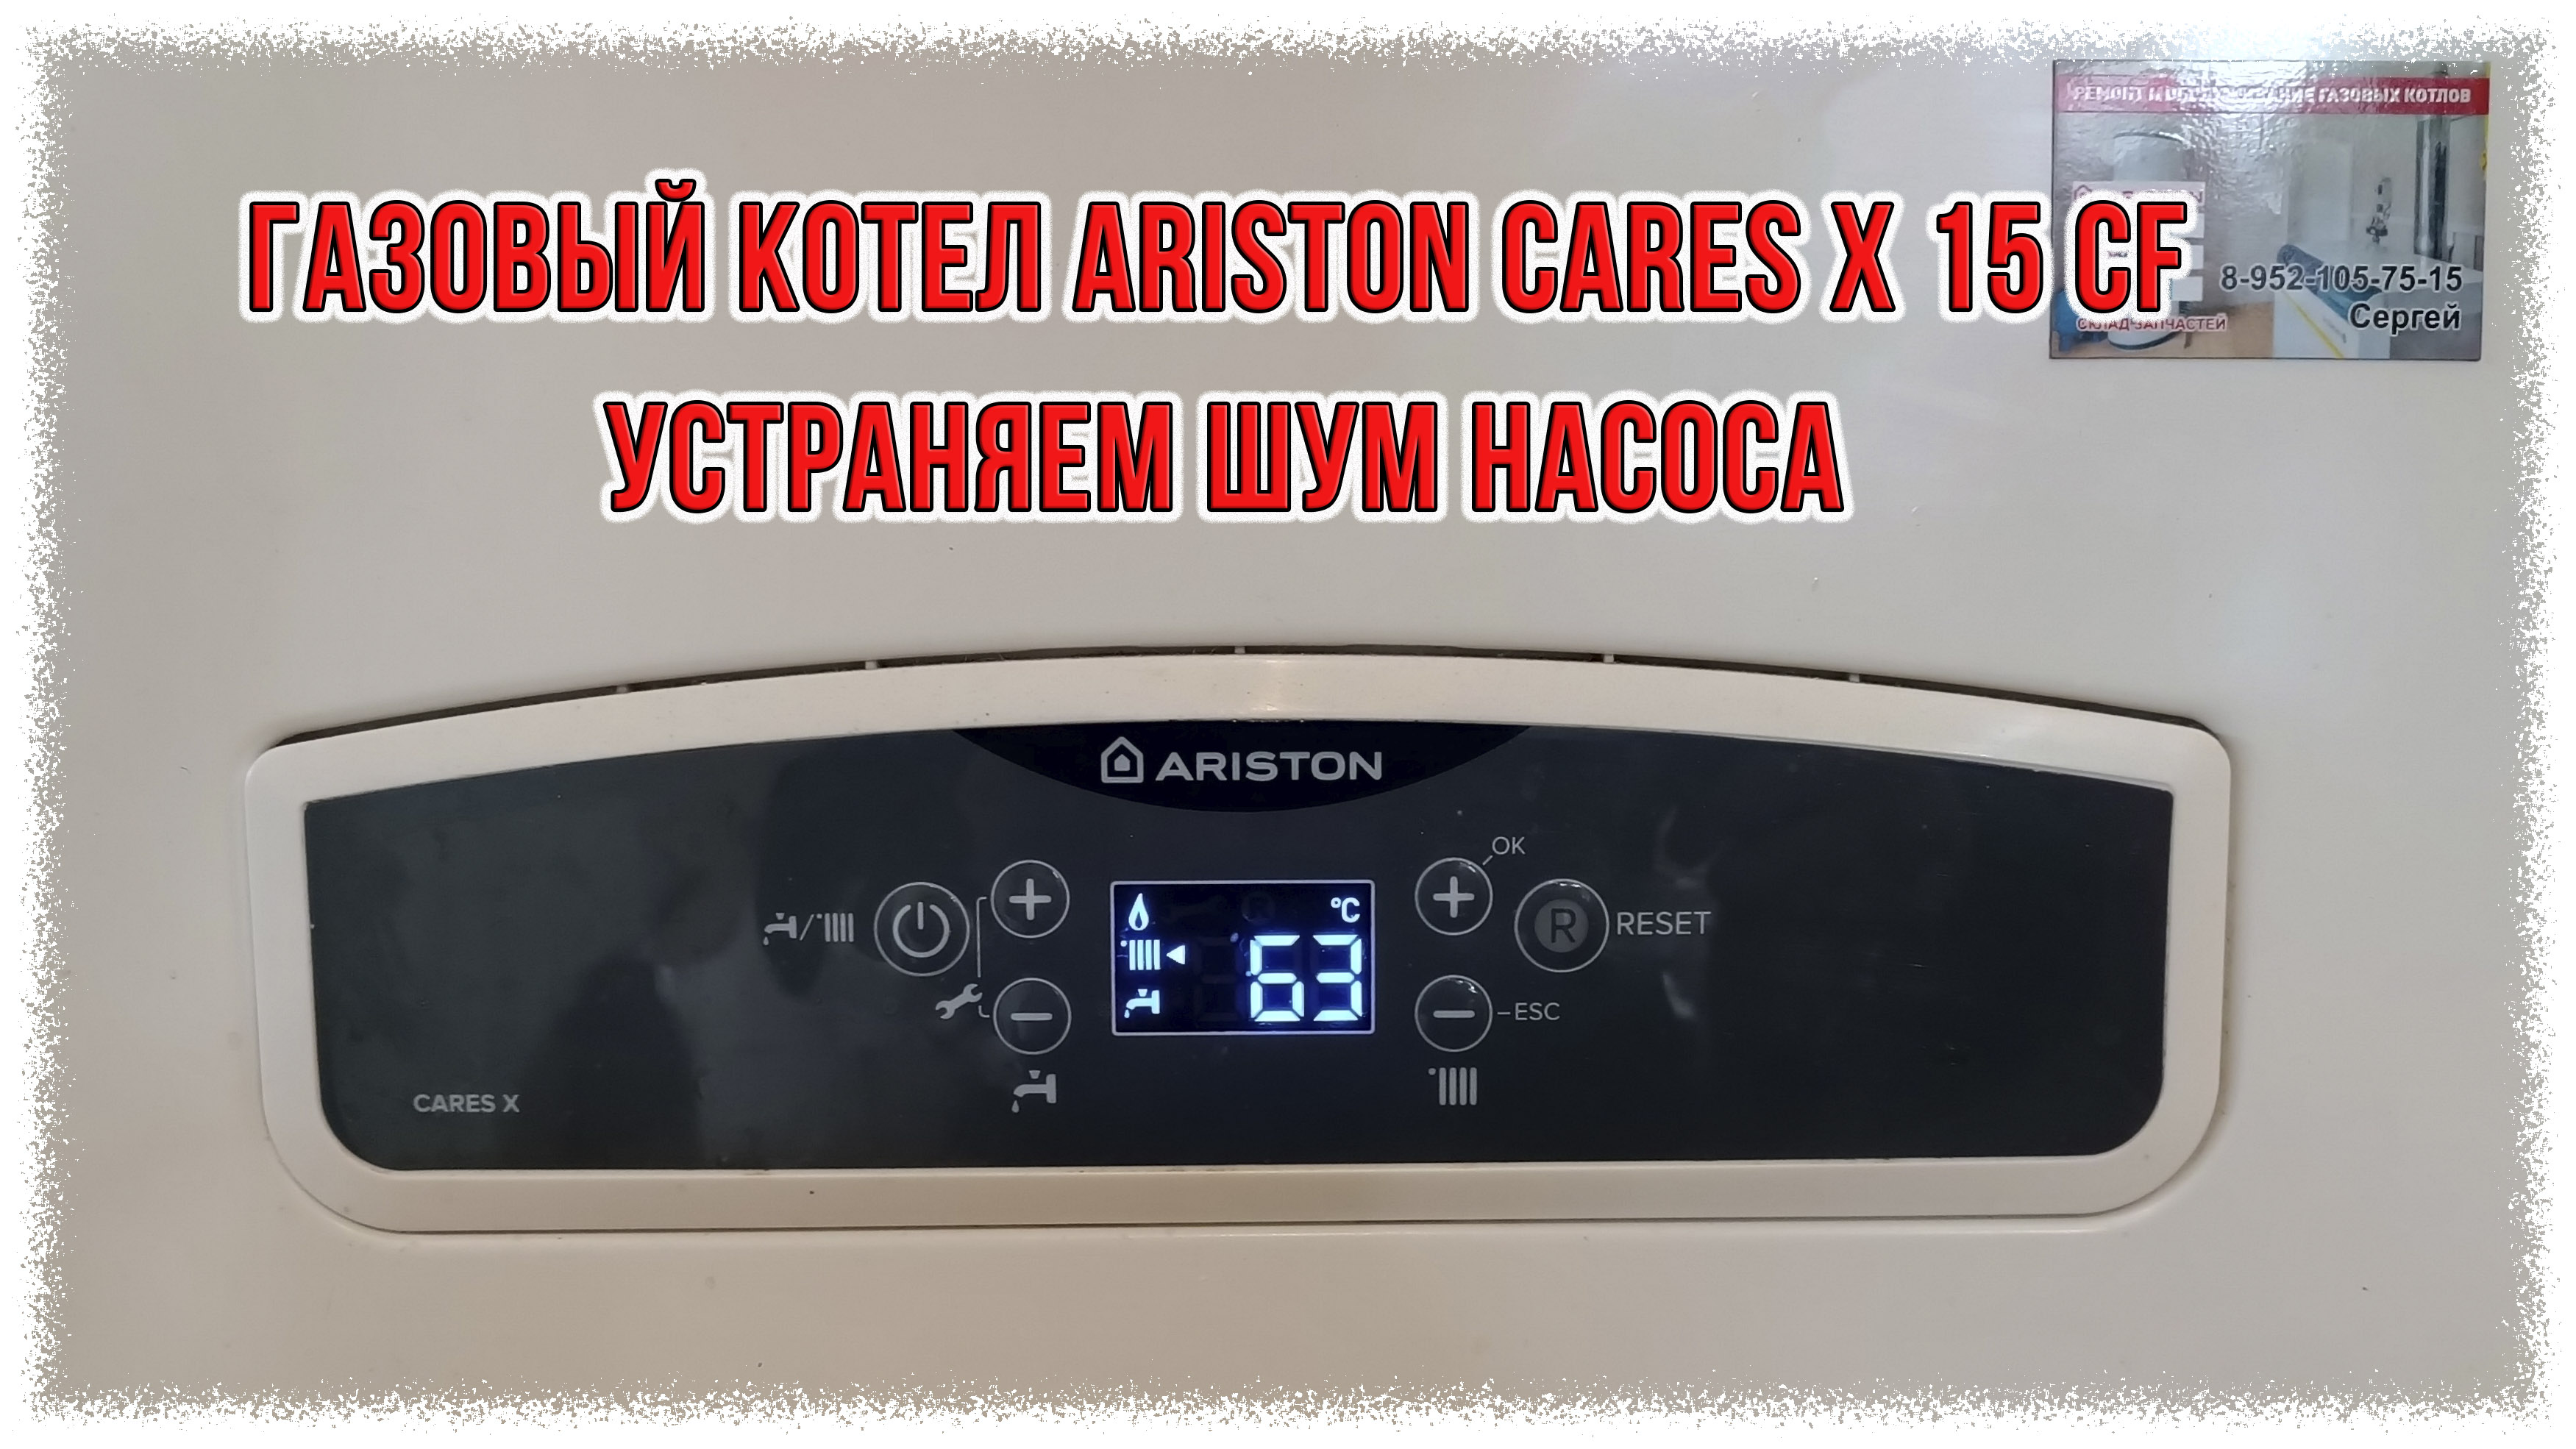 Газовый котел Ariston Cares X 15 CF устраняем шум насоса